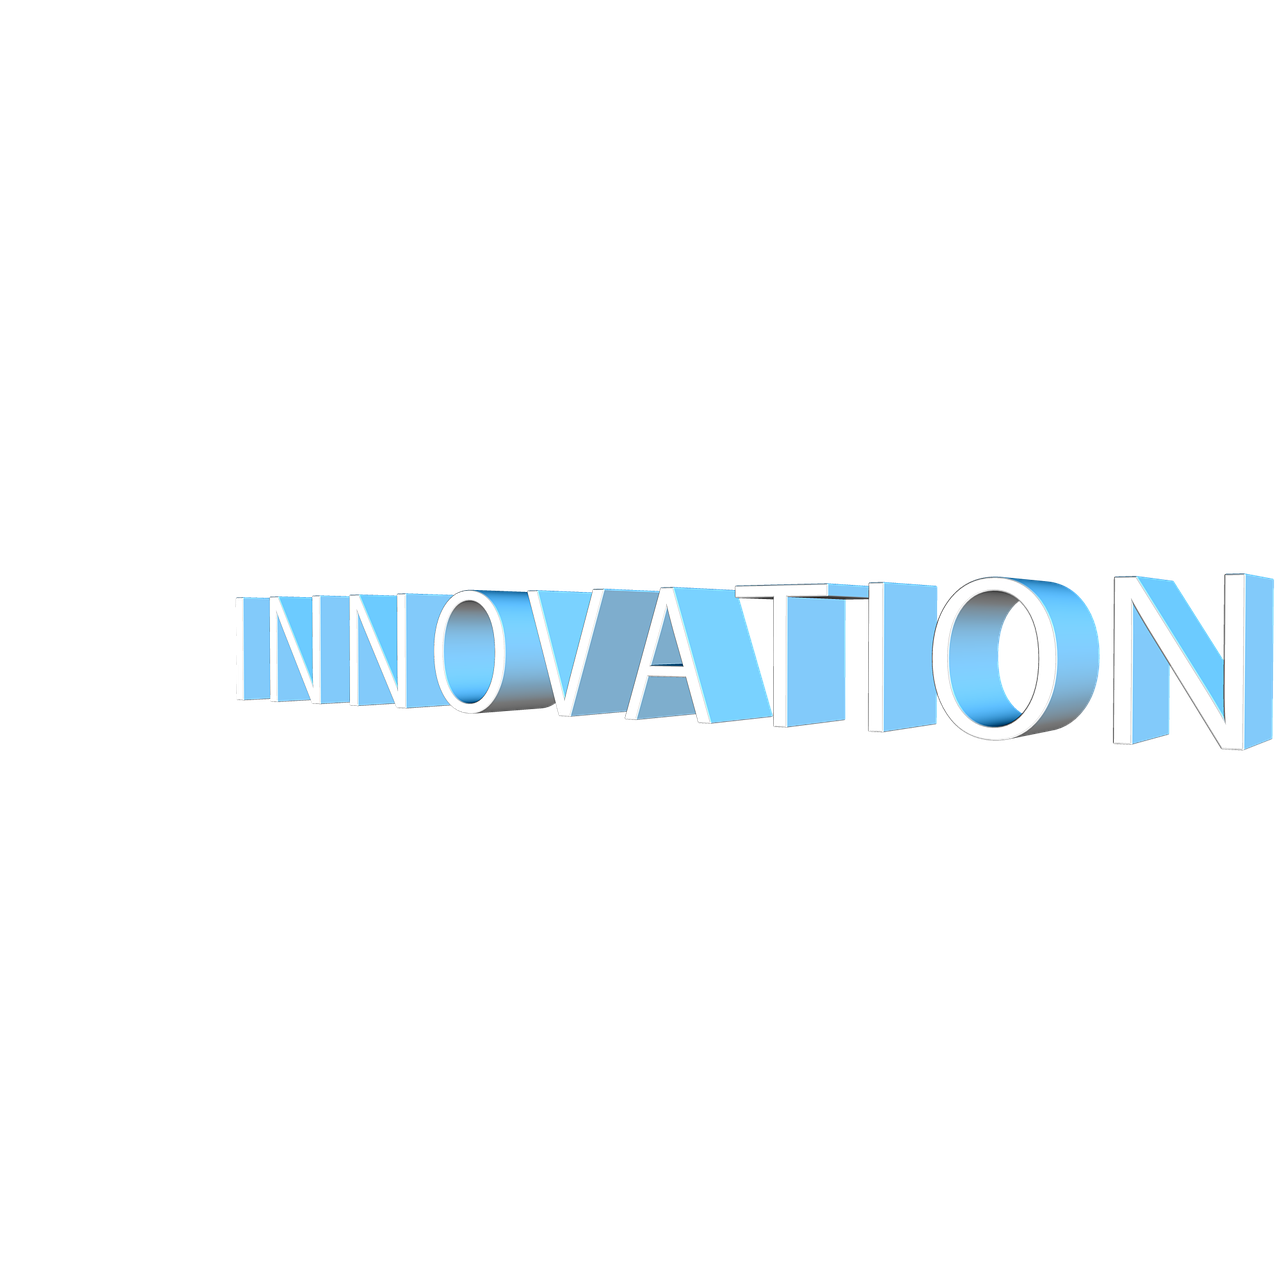 Inovacijos, Atnaujinimas, Konversija, Transformacija, Naujovė, Keisti, Pertvarkymas, Reorganizavimas, Naujos Taisyklės, Nauja Pradžia